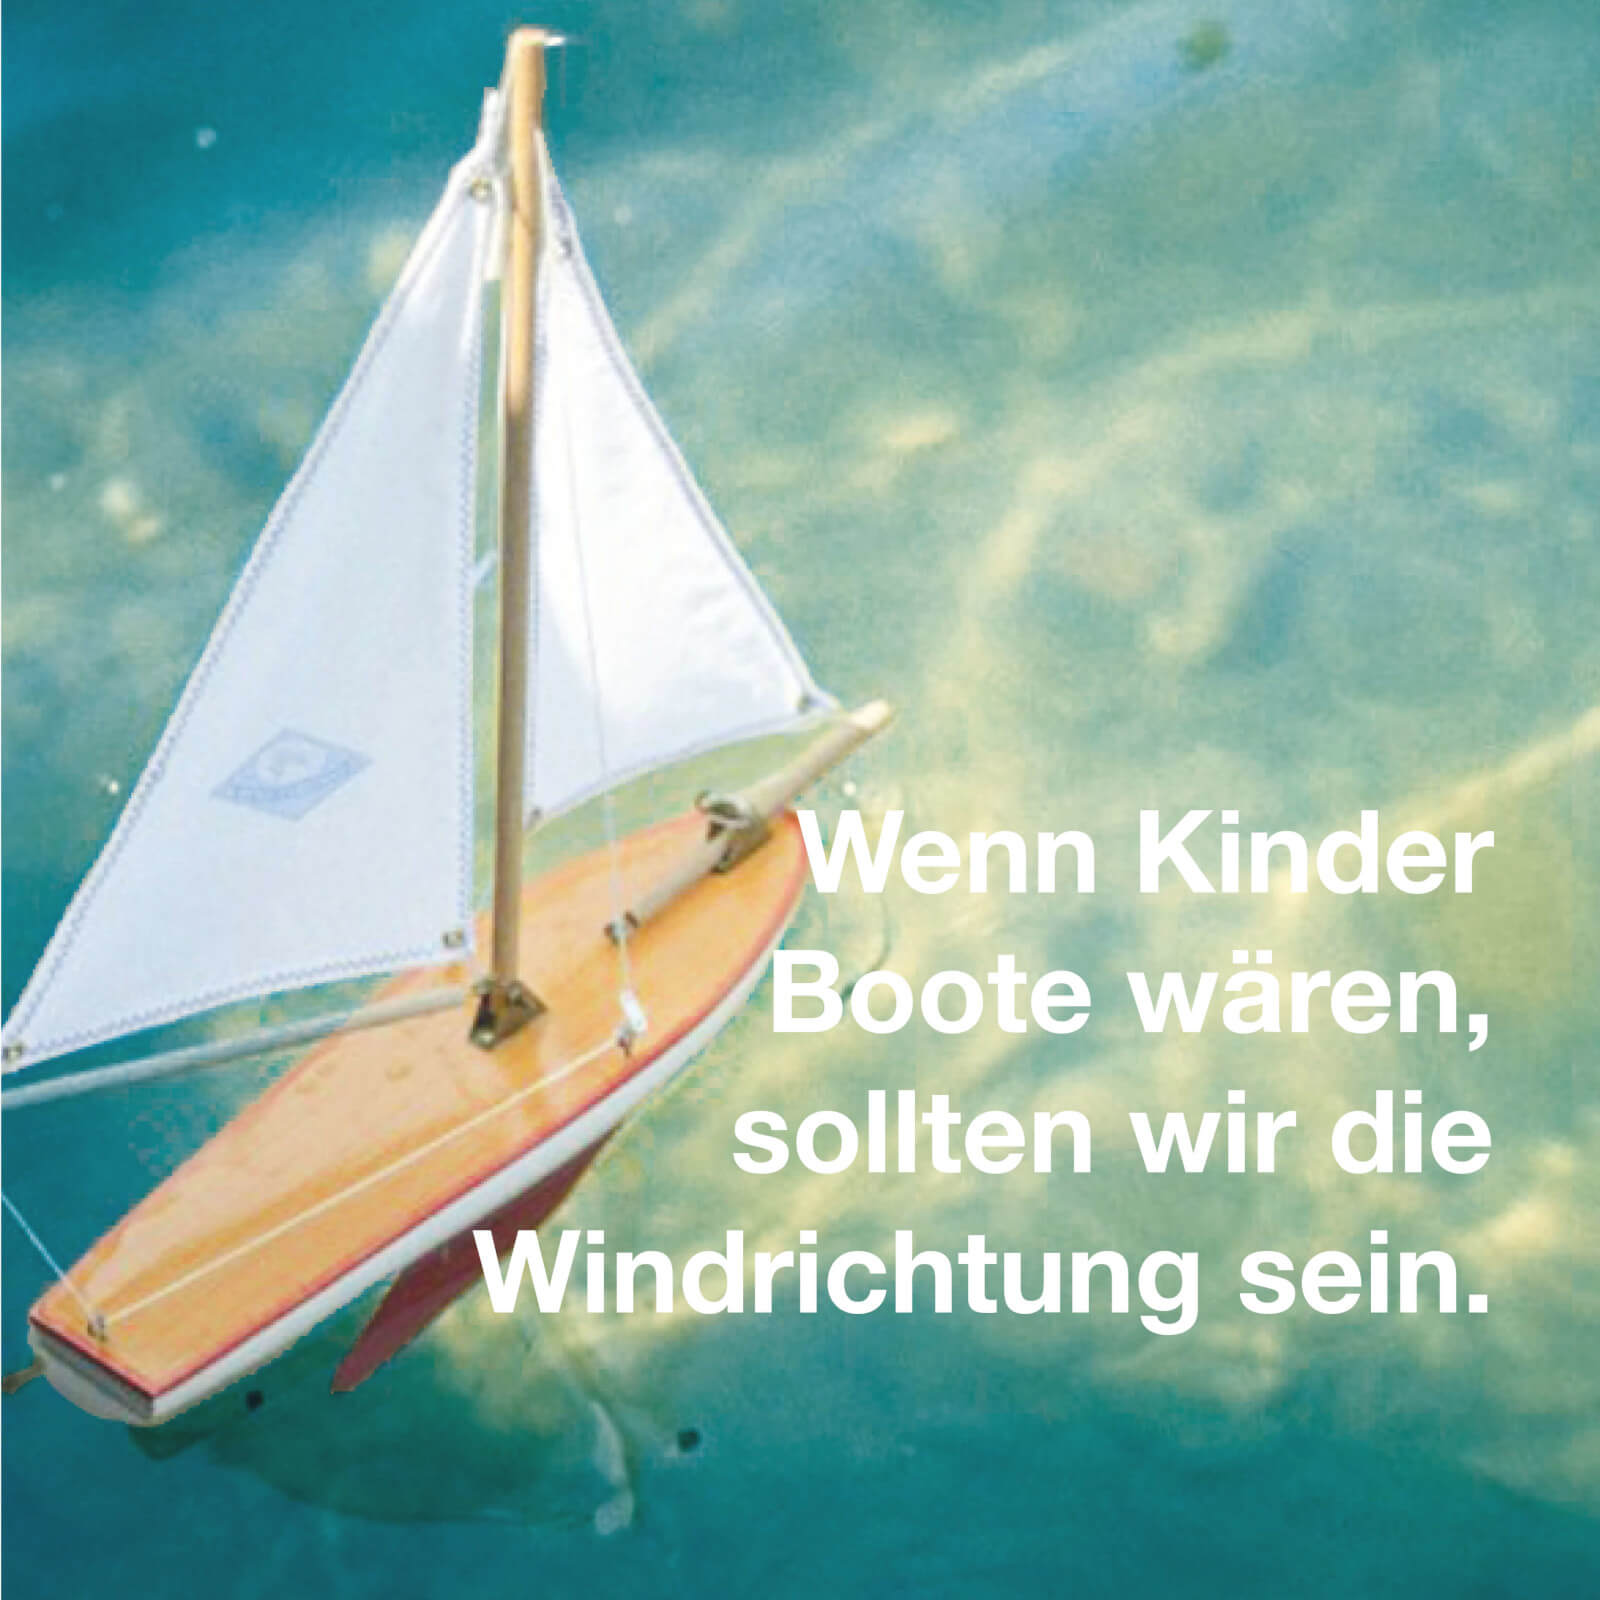 Wenn Kinder Boote wären, dann sollten wir die Windrichtung sein